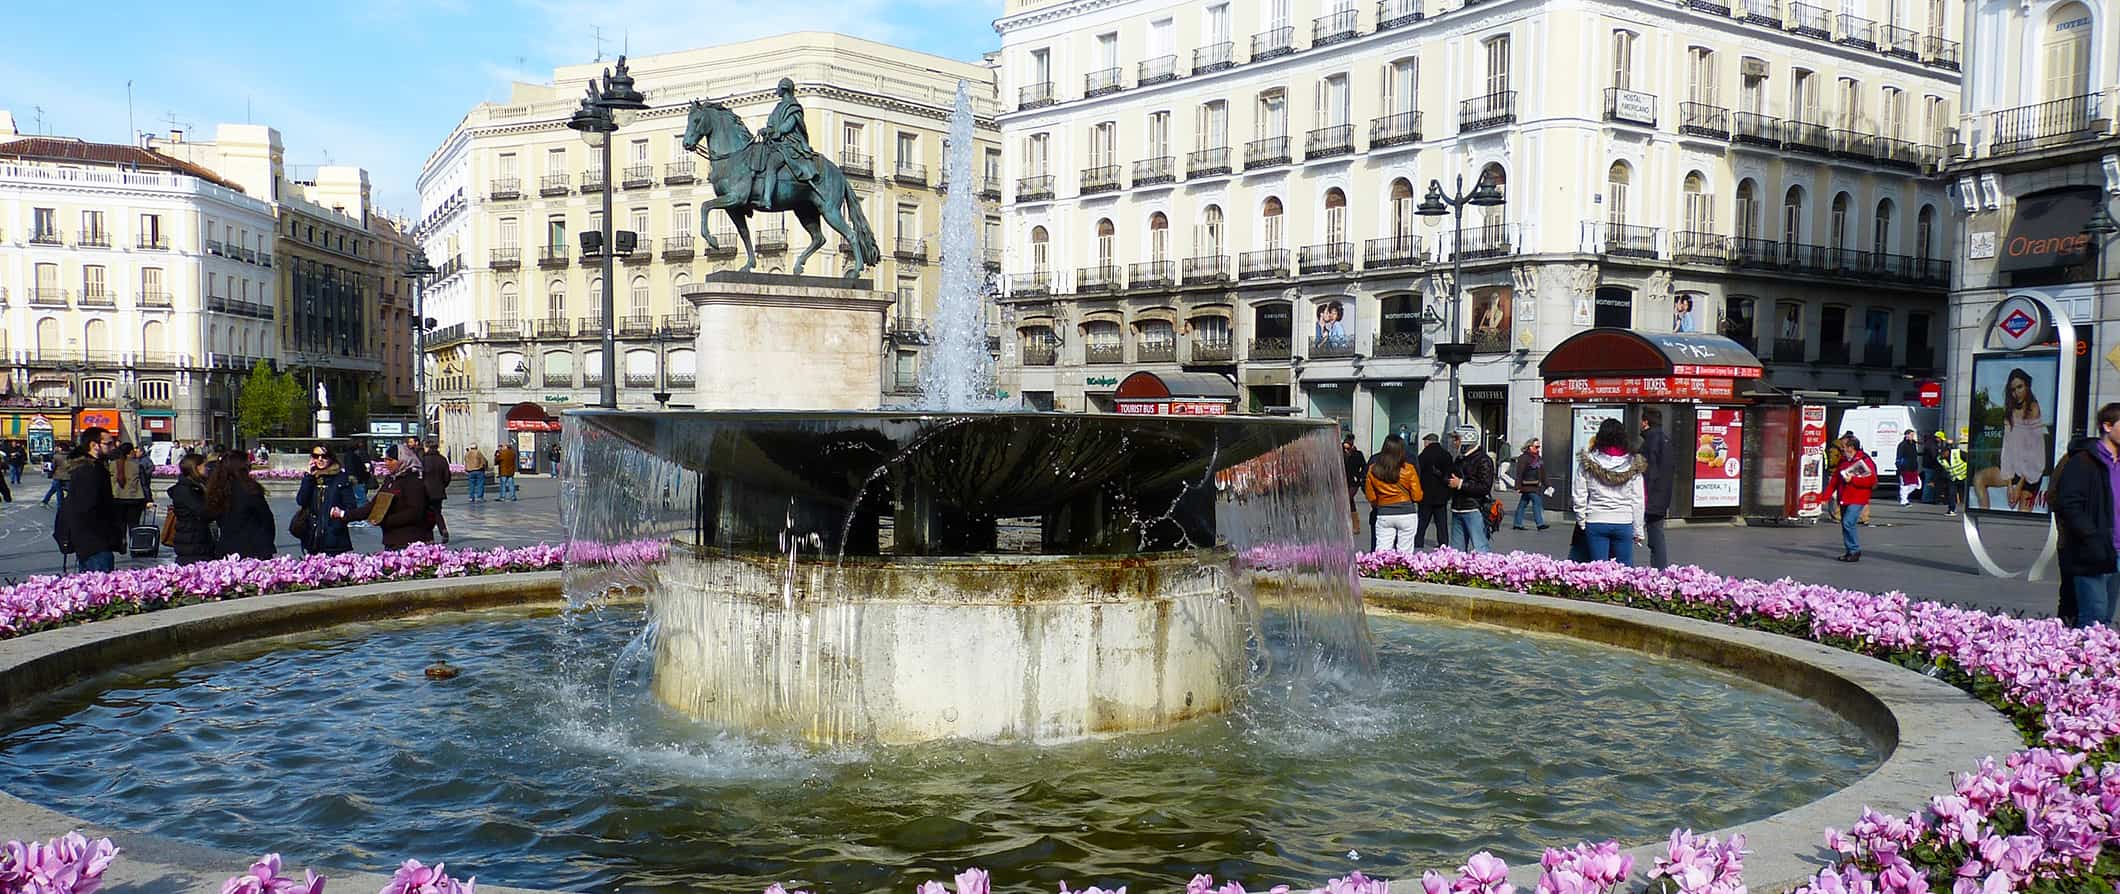 Pessoas se lotam em torno de uma enorme fonte histórica em um dia ensolarado em Madri, Espanha